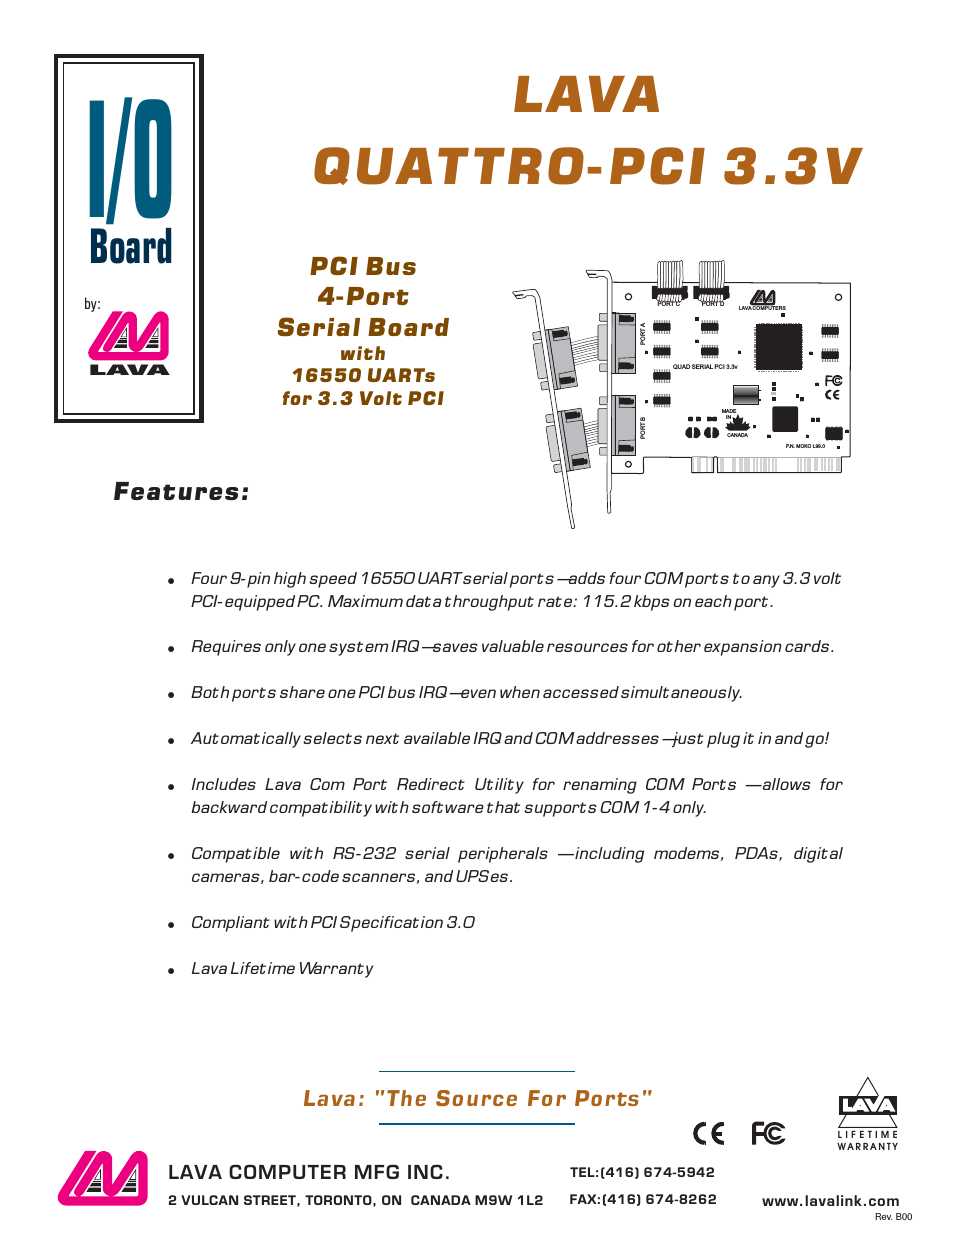 QUATTRO-PCI 3.3V